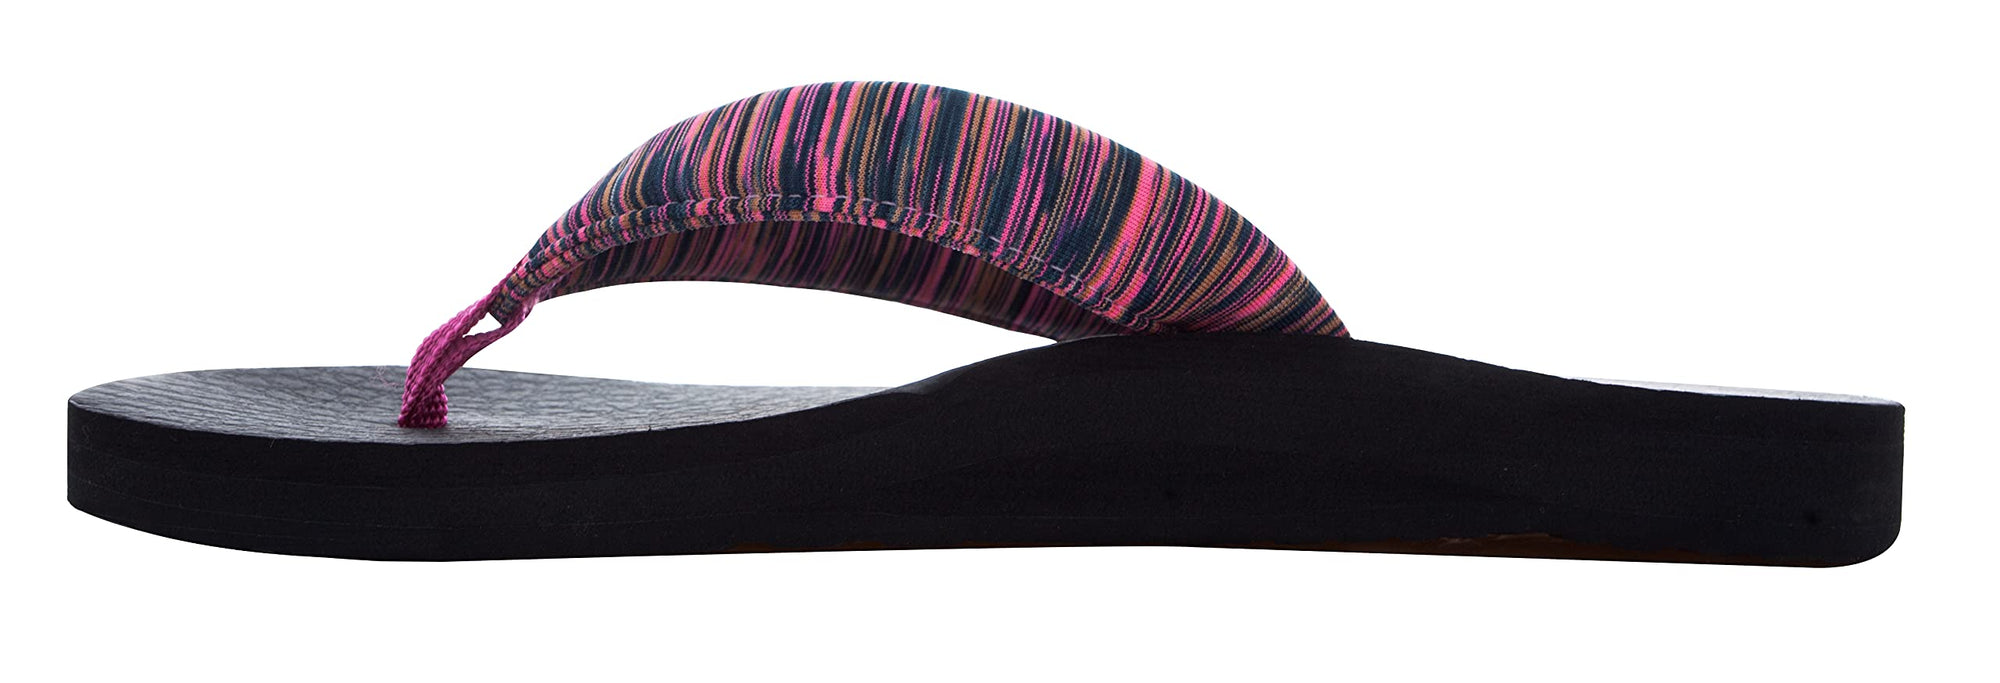 Scott Kulea Women's Yoga Sandals